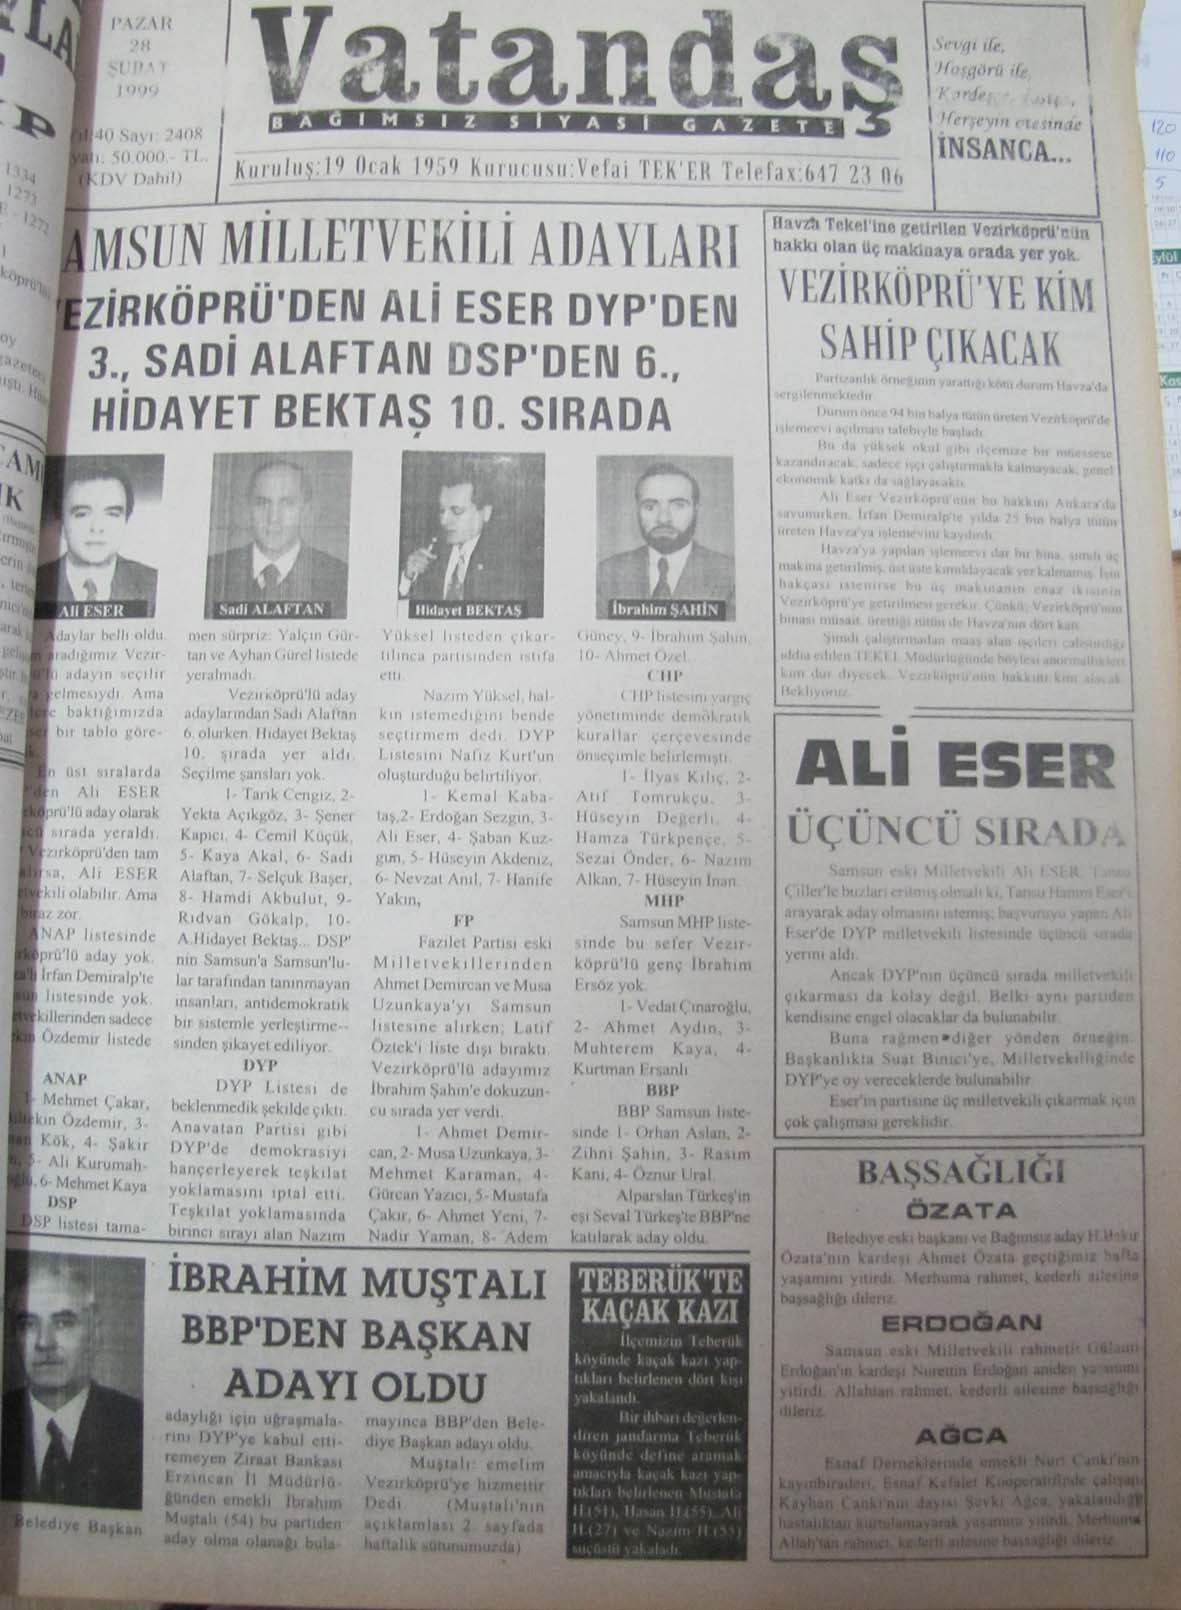 Samsun Milletvekili  Adayları Vezirköprü’den Ali Eser DYP’den 3., Sadi Alaftan DSP’den 6., Hidayet Bektaş 10.Sırada 28 Şubat 1999  Pazar